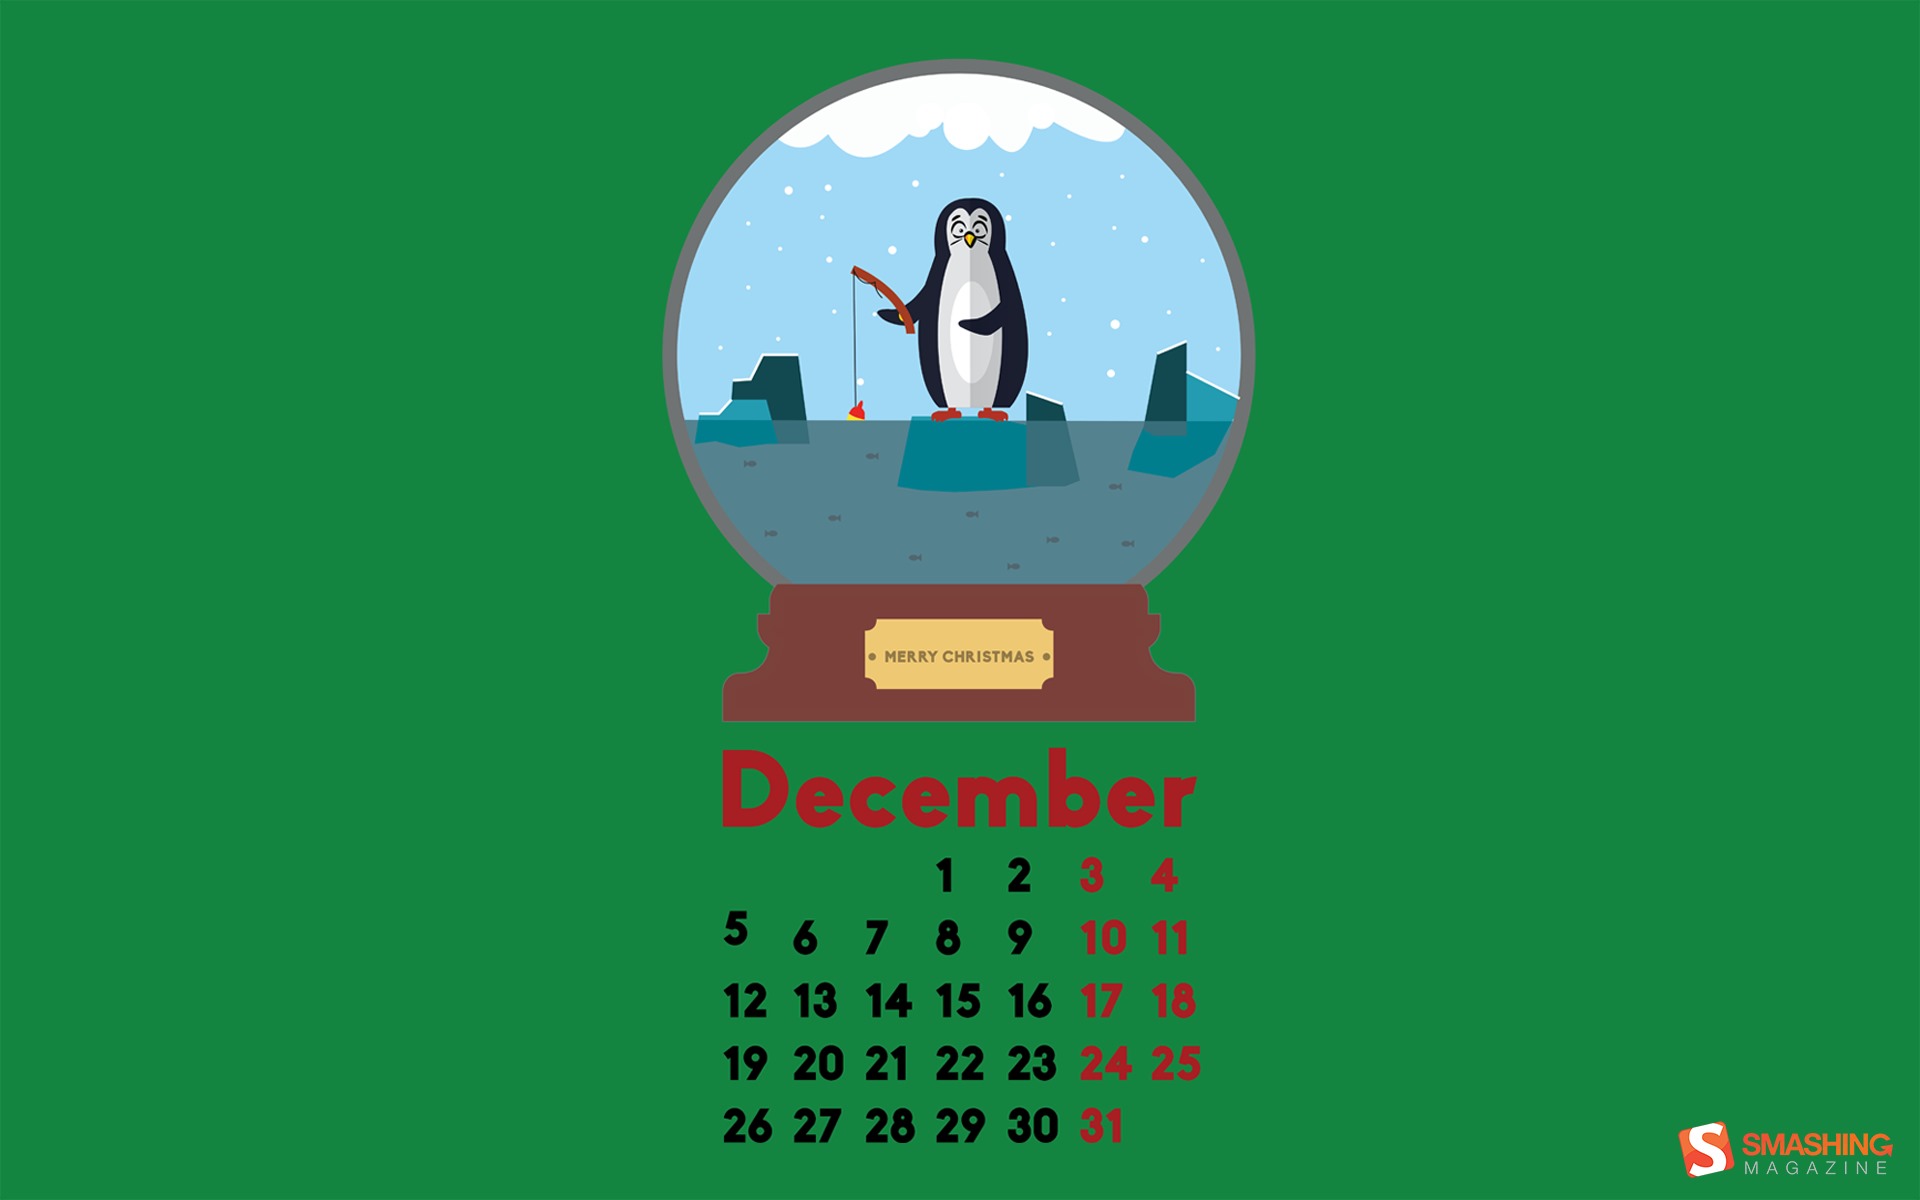 December 2016 Christmas theme calendar wallpaper (2) #8 - 1920x1200